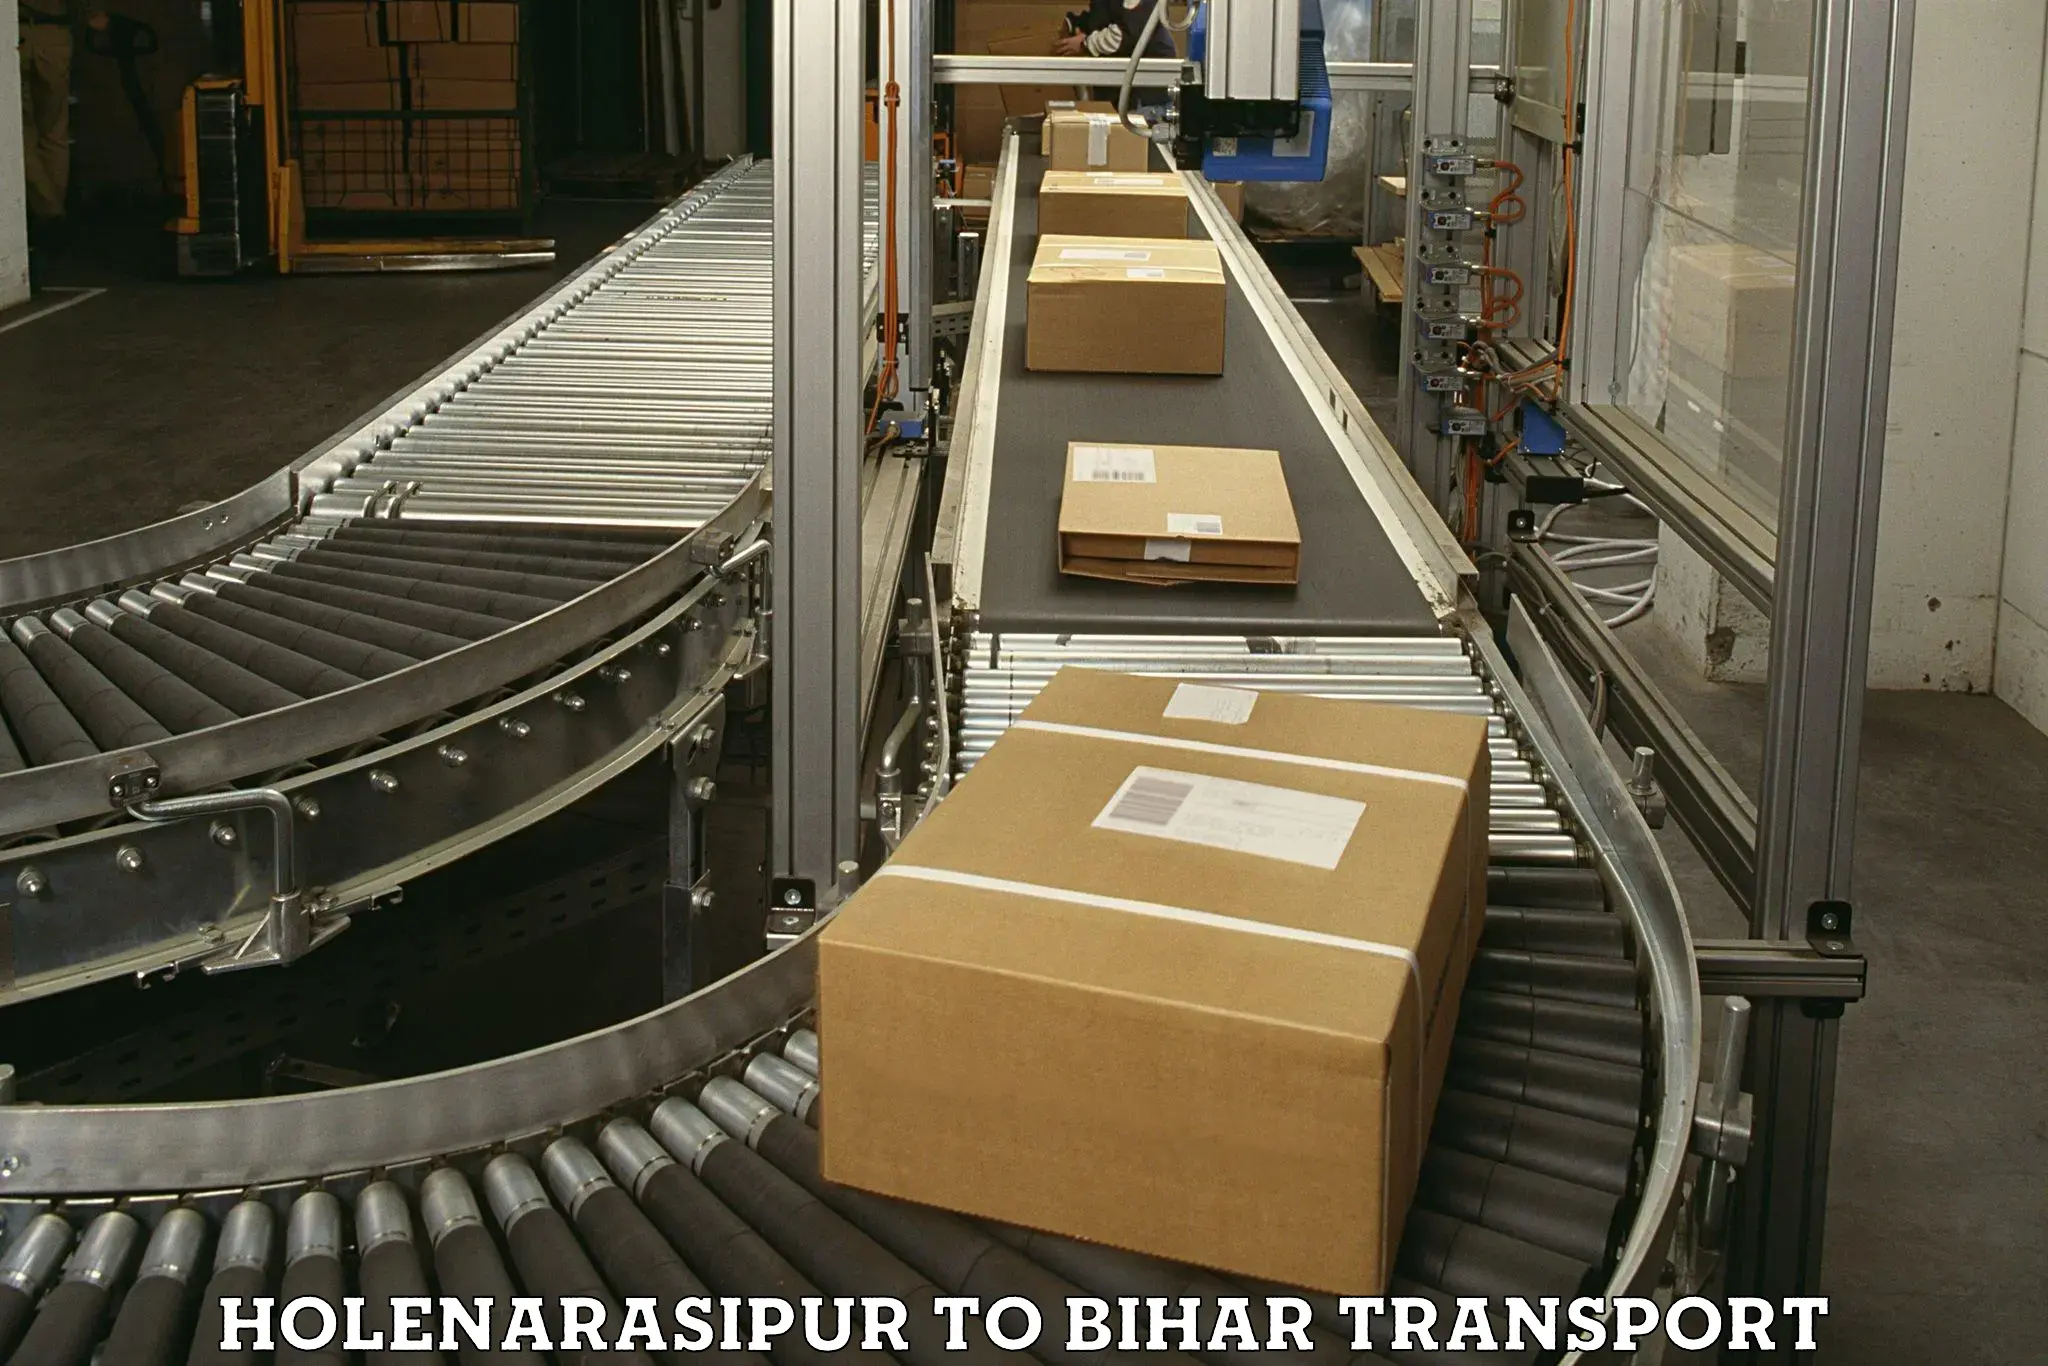 Commercial transport service Holenarasipur to Rajgir